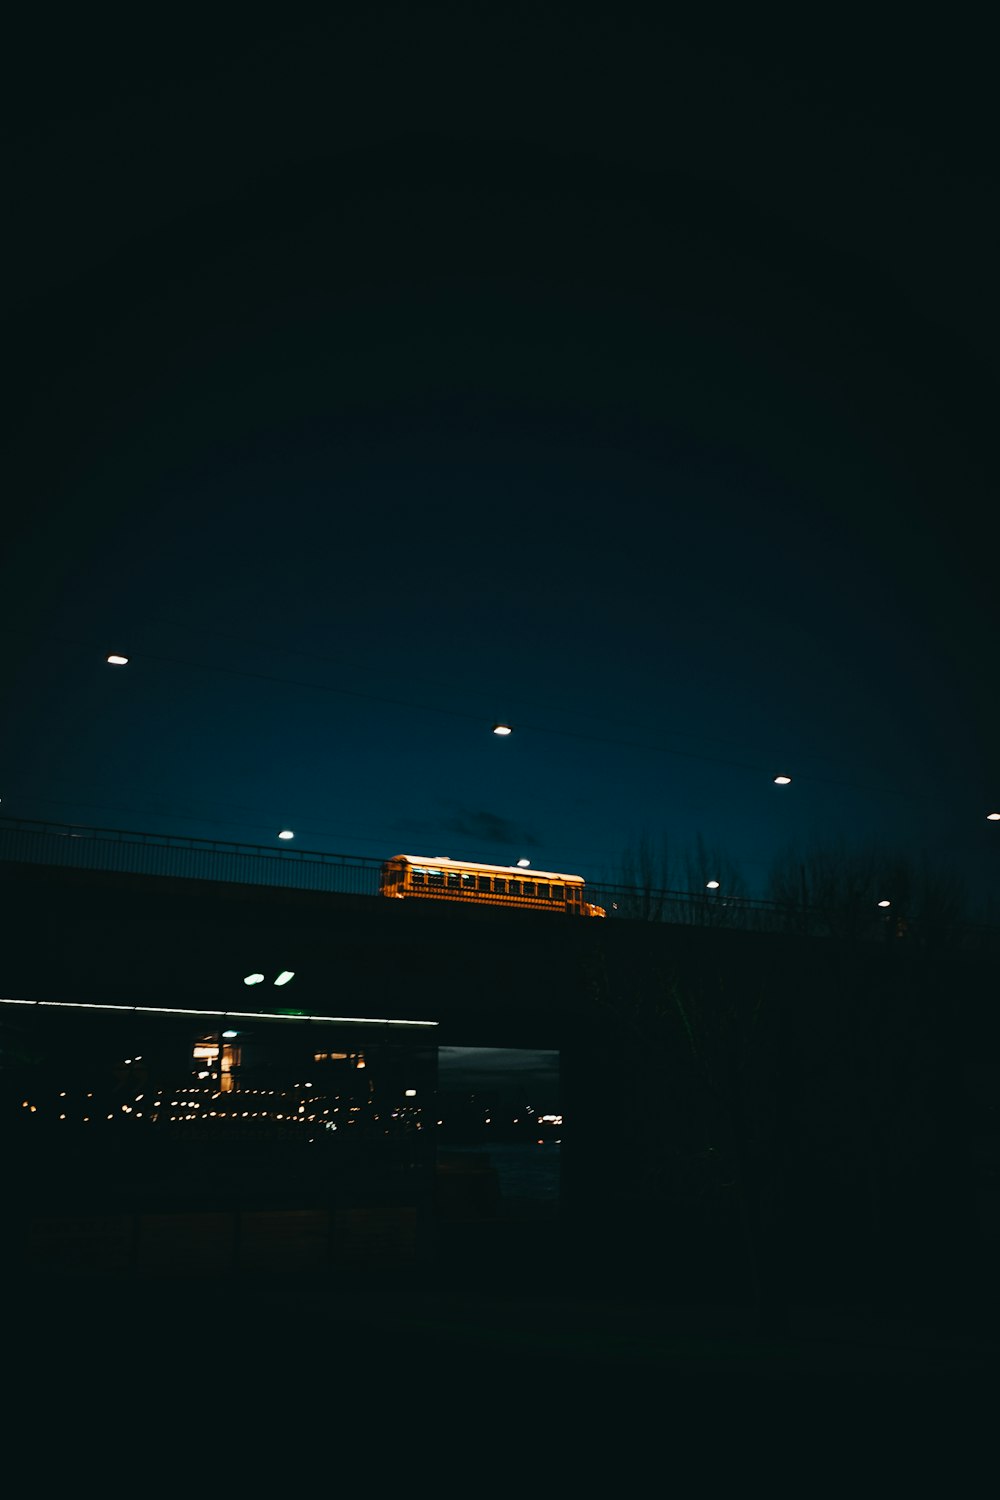 Ein Zug, der nachts über eine Brücke fährt